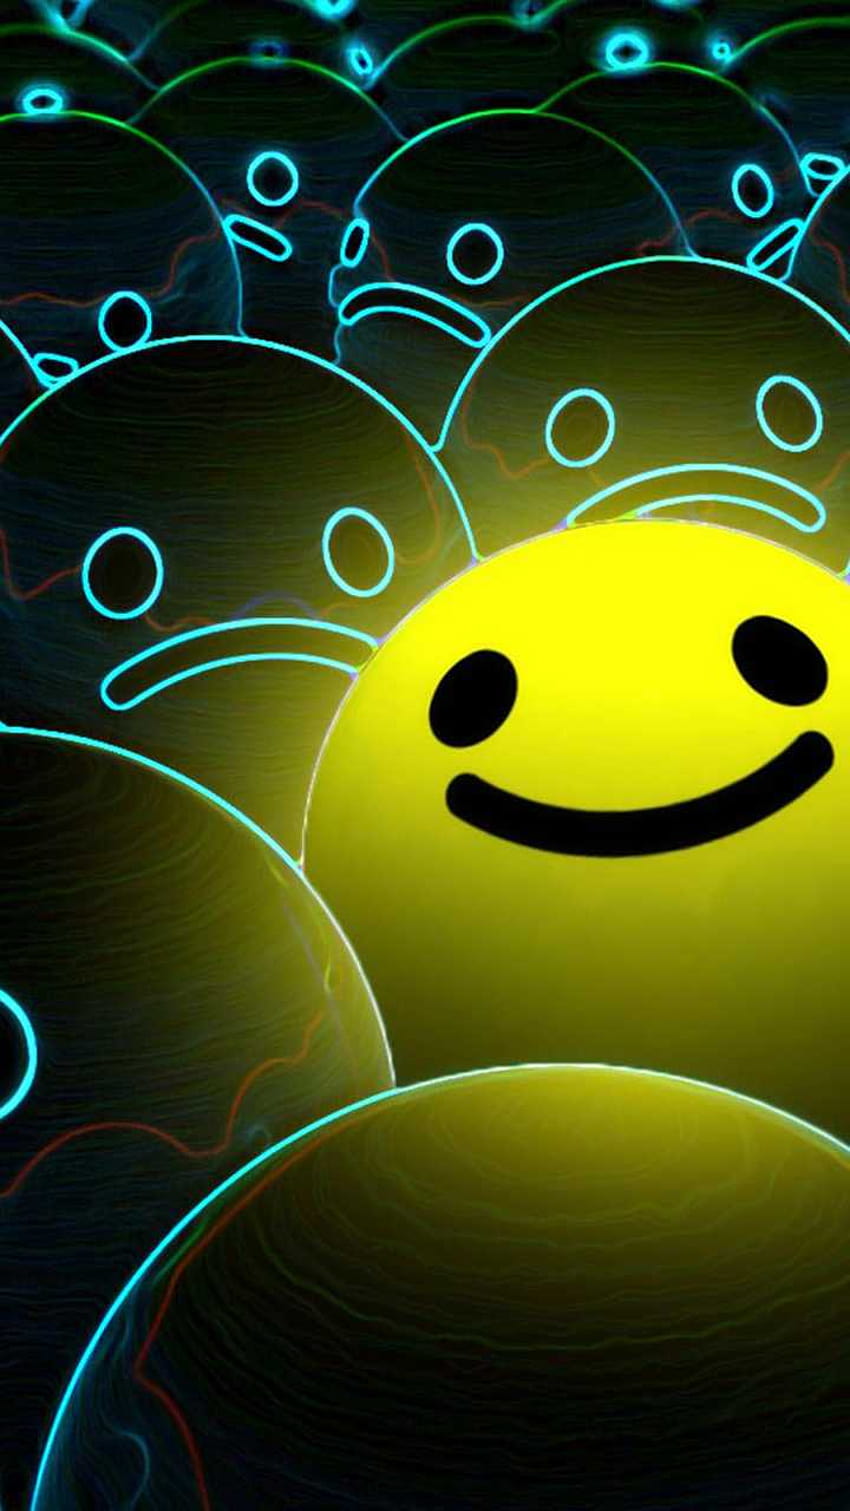 Hình nền Preppy Smiley Face: Tận hưởng sự ngọt ngào và đáng yêu của hình nền Preppy Smiley Face. Bạn sẽ yêu thích một gương mặt cười hạnh phúc và lạc quan đang chào đón bạn. Trang trí màn hình điện thoại của bạn với một hình nền đầy màu sắc và vui nhộn sẽ tạo cảm hứng cho ngày của bạn.